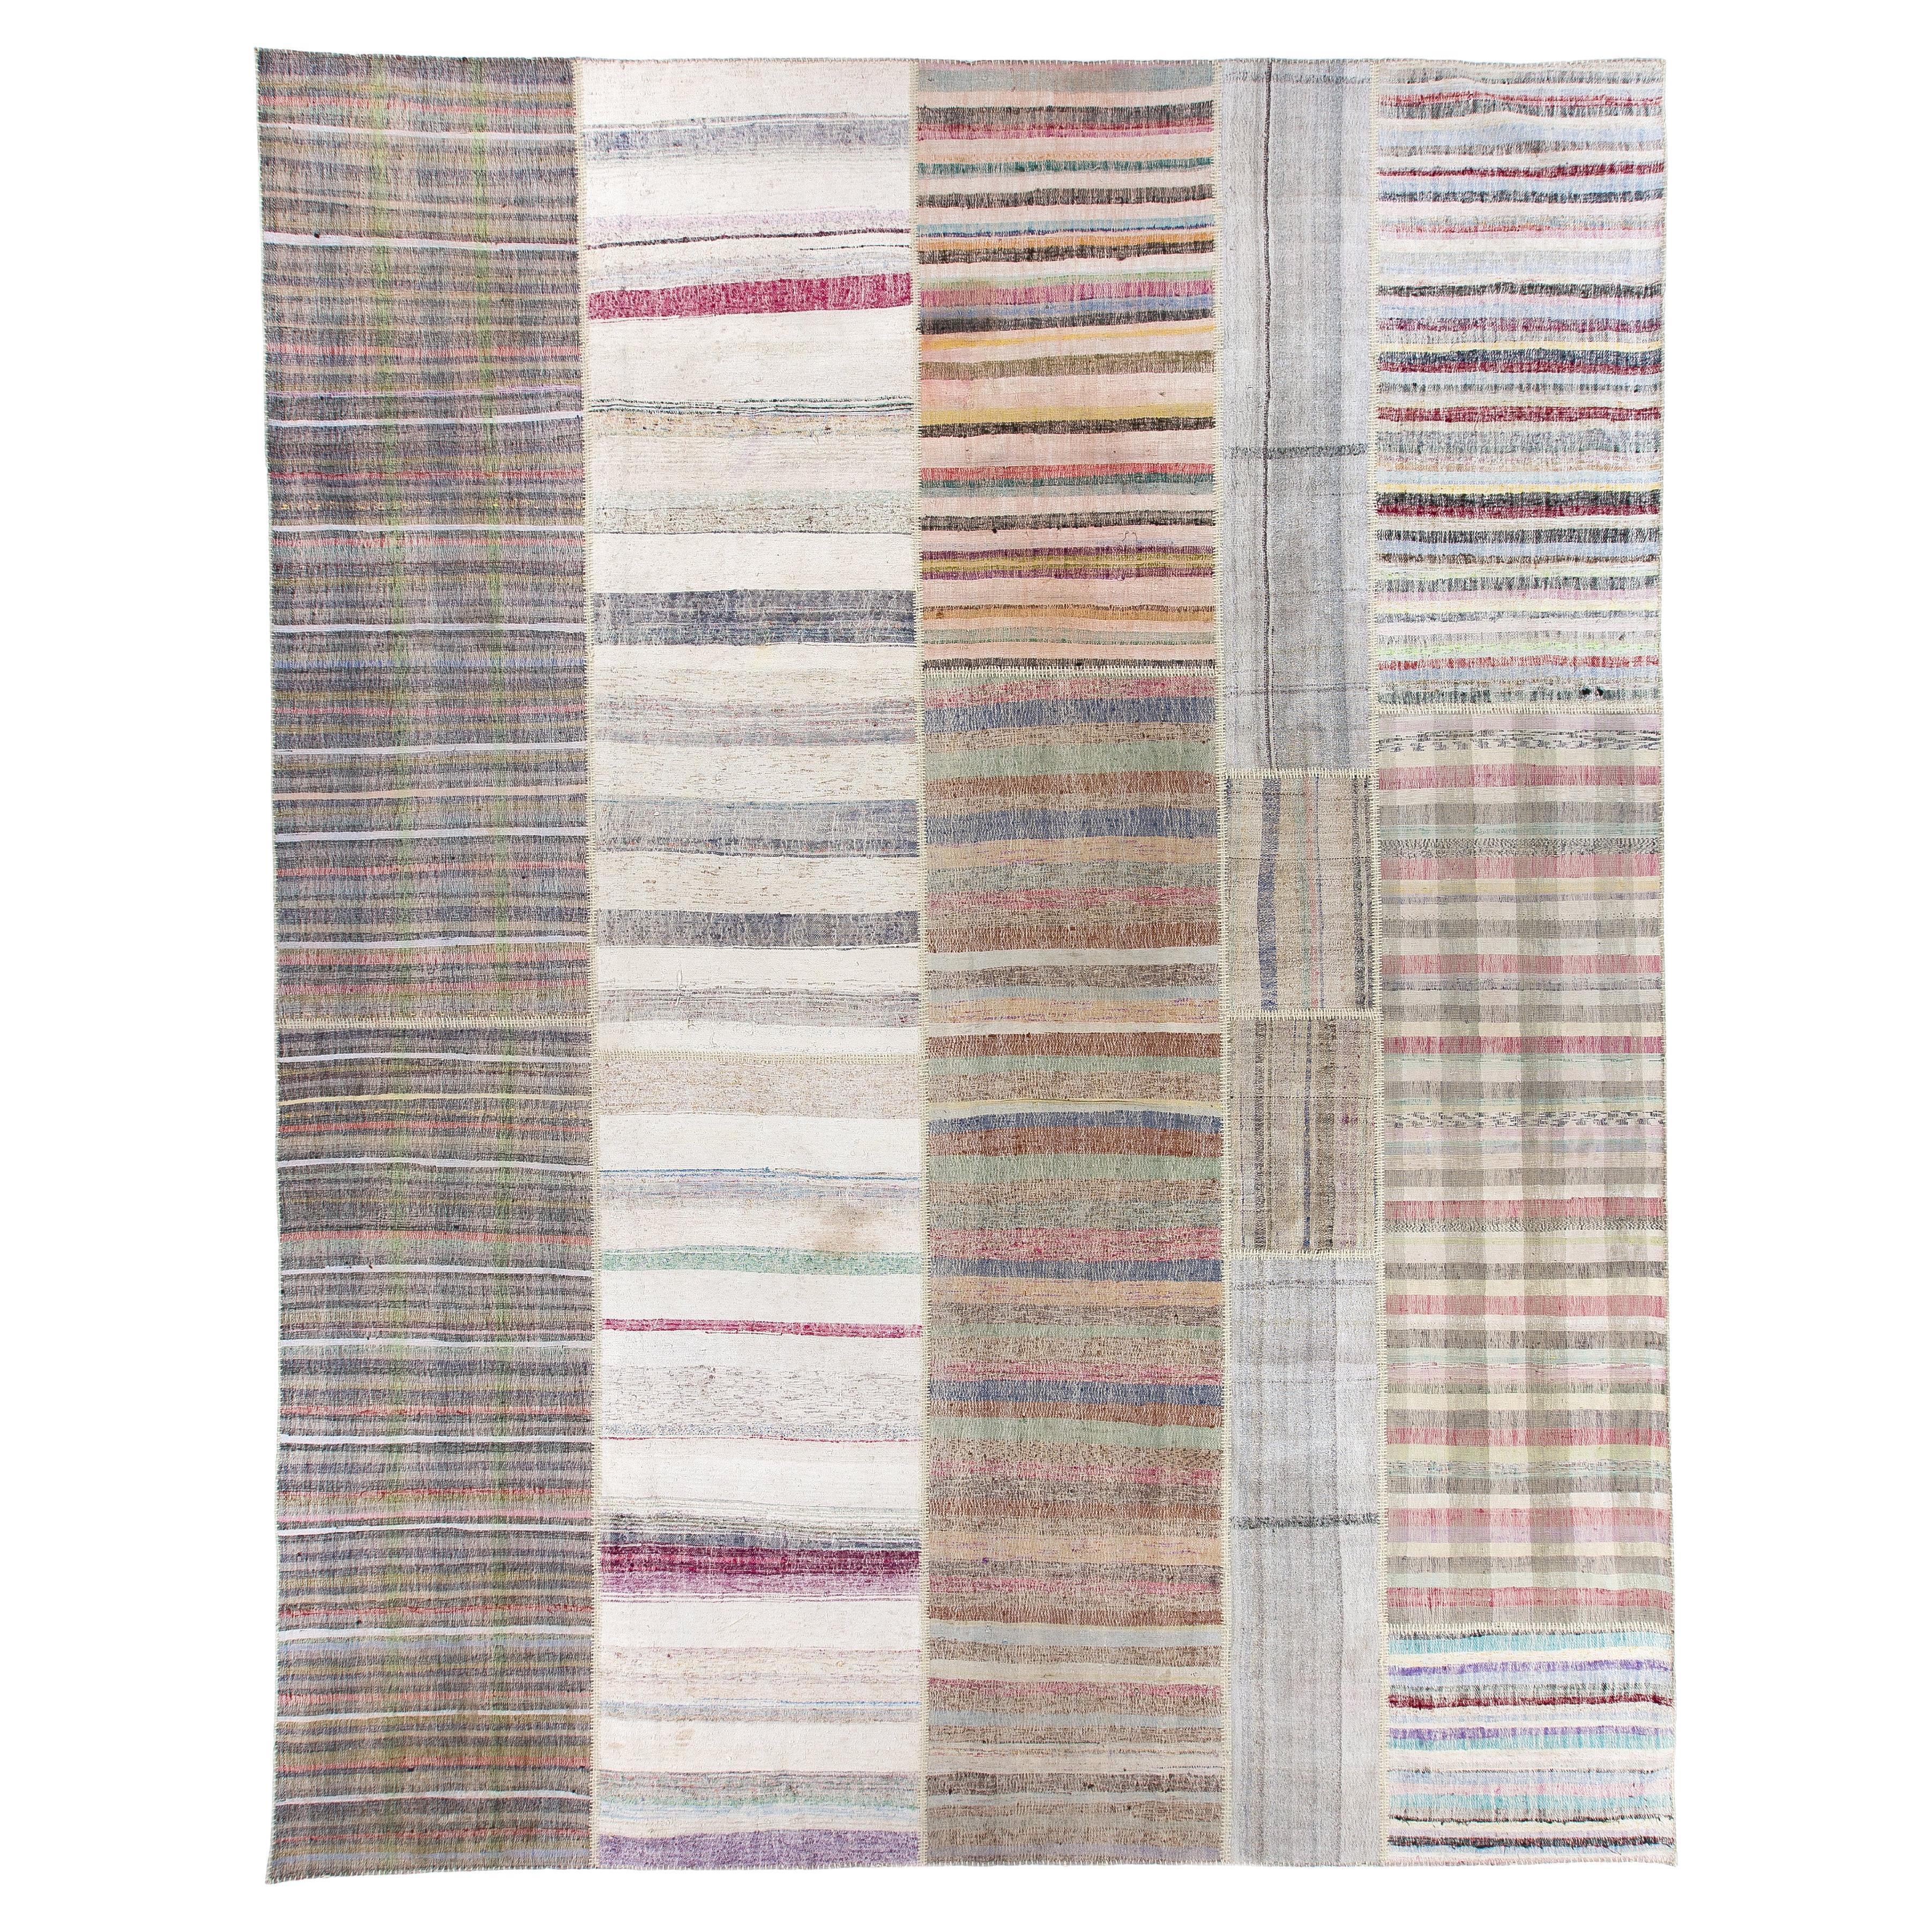 12.4x16.4 Ft Oversize Striped Cotton Colorful Rag Rug, Adjustable, Vintage Kilim